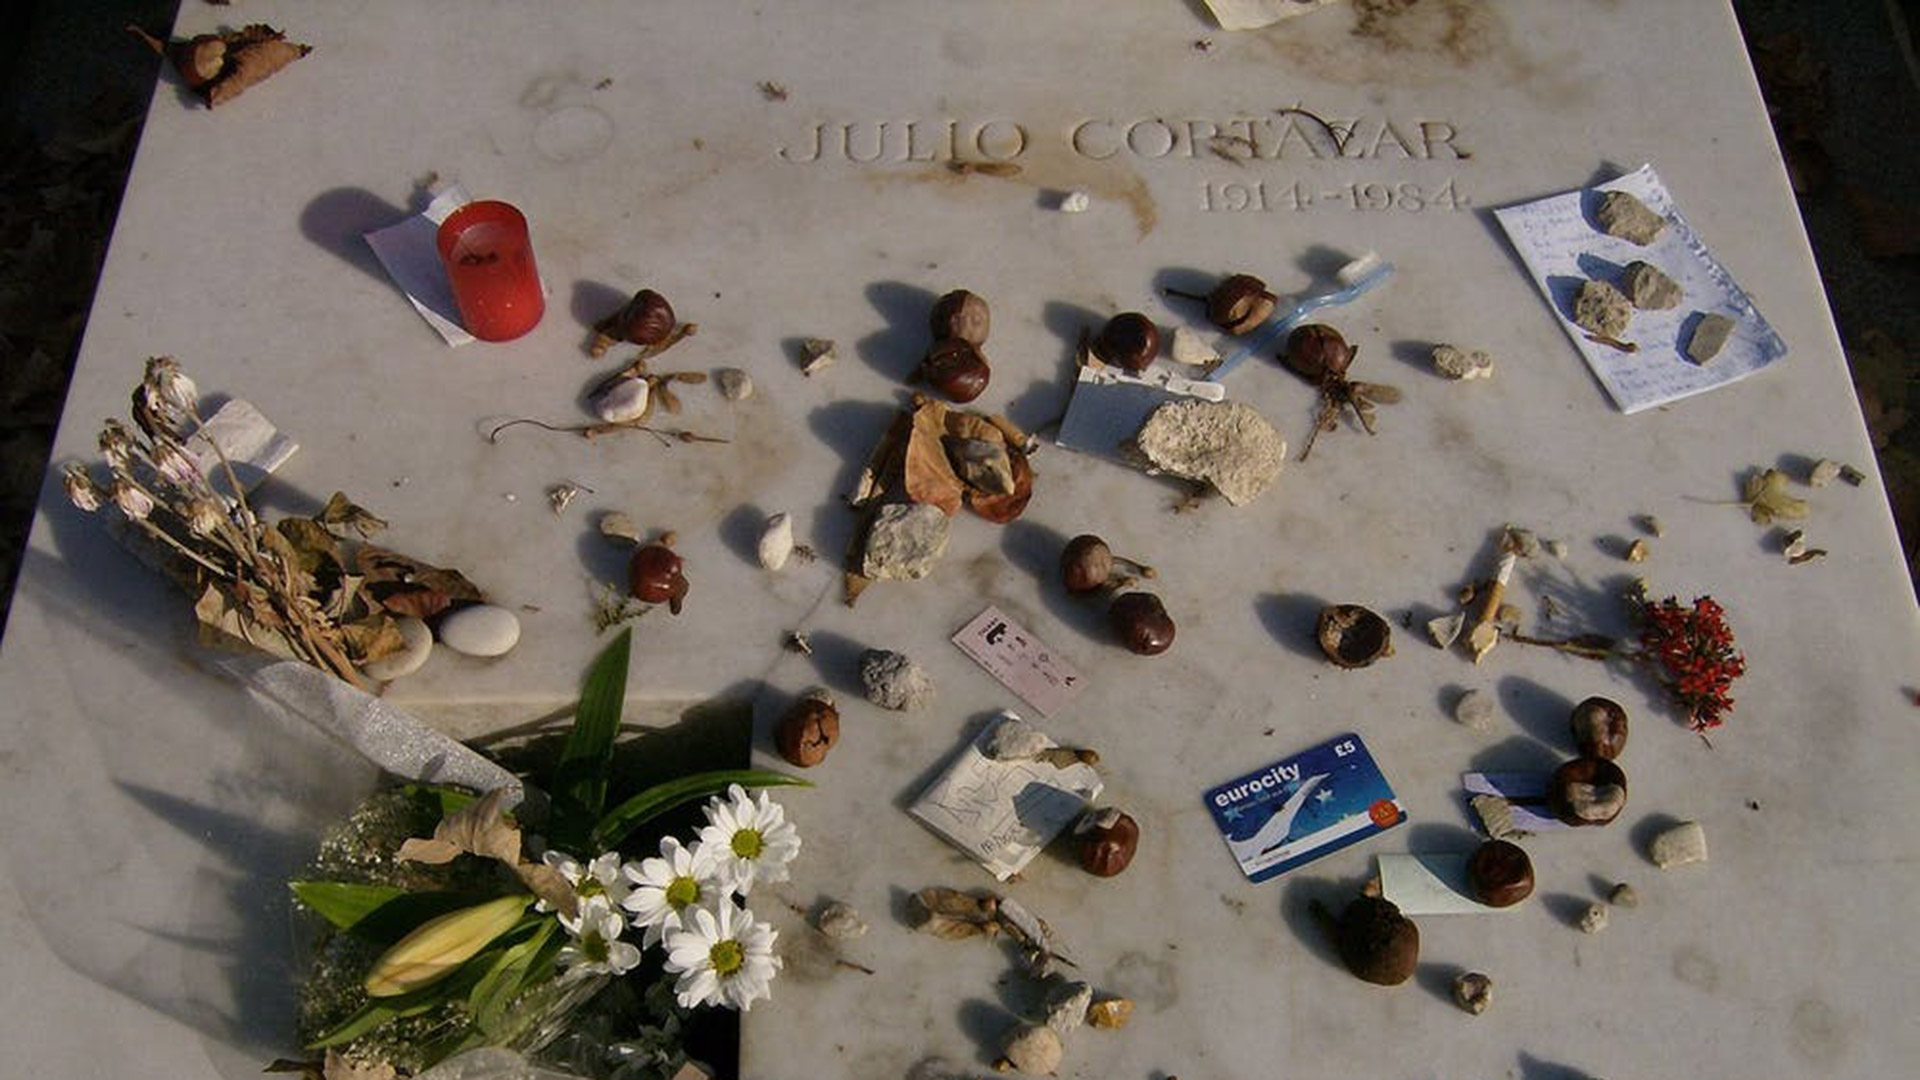 Julio Cortázar está enterrado en el cementerio de Montparnasse, en París. Su tumba es un foco de atracción turística.